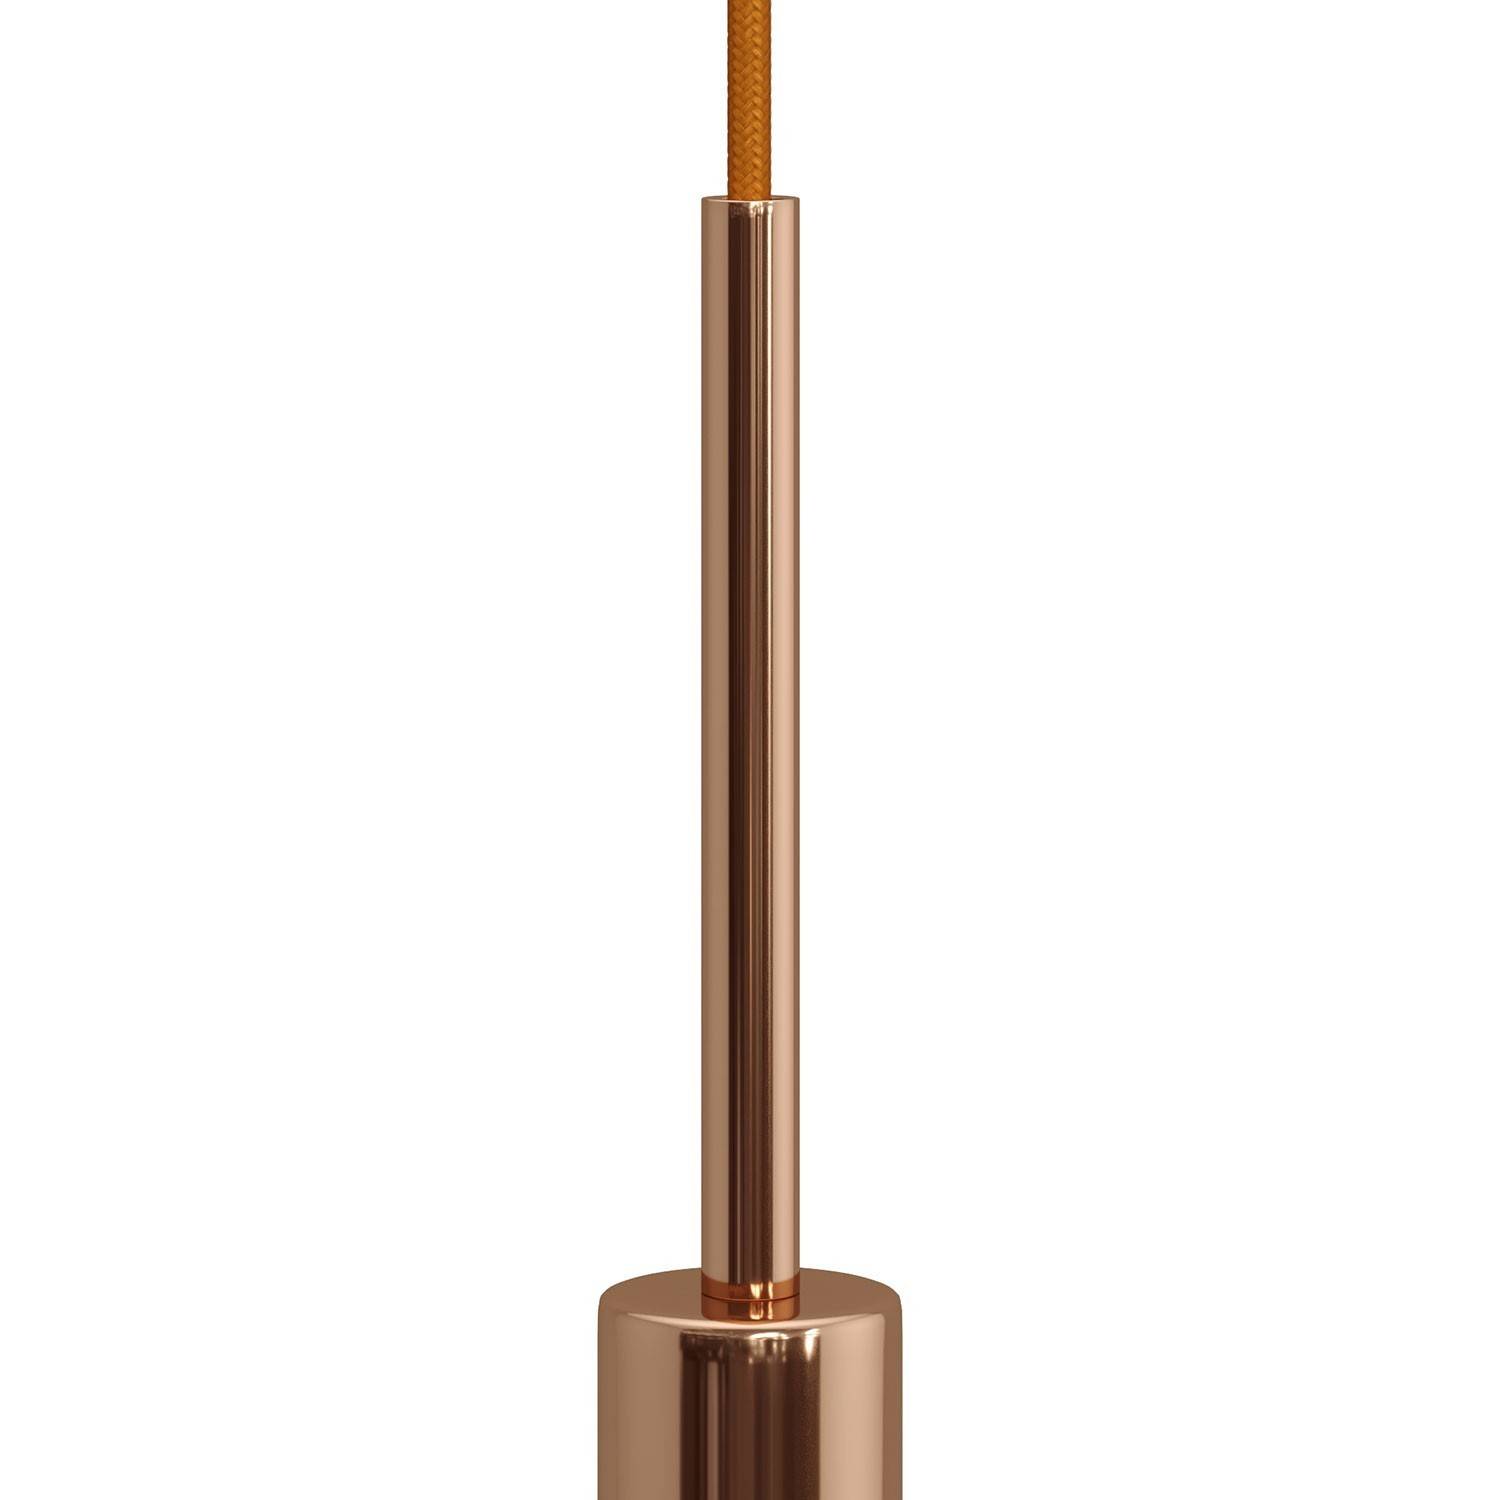 Válcová kovová kabelová průchodka se závitovou tyčkou, maticí a podložkou, délka 15cm